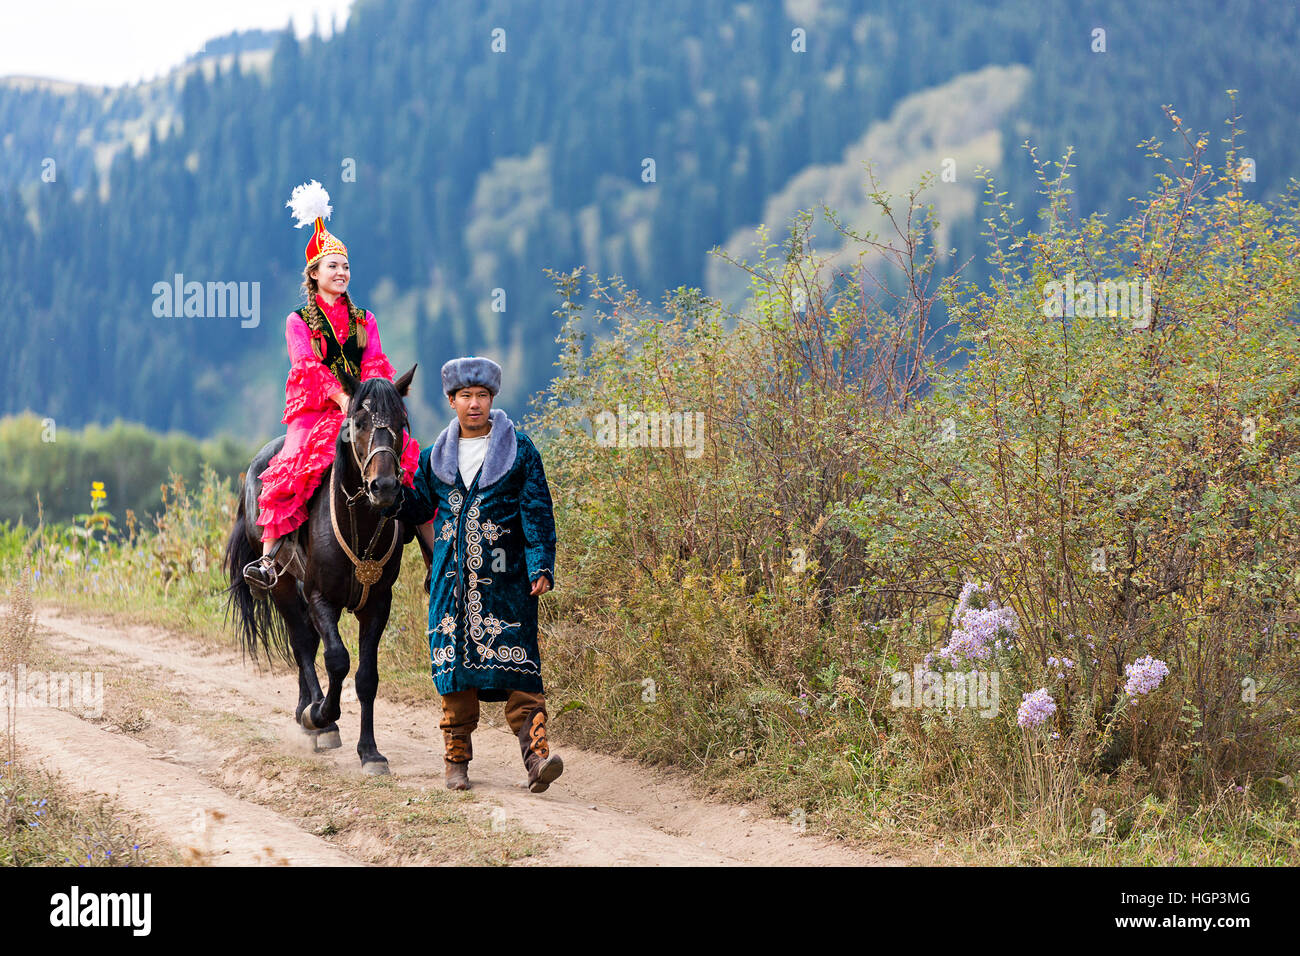 Coppia kazaka in costume nazionale con donna locale a cavallo, Kazakhstan Foto Stock